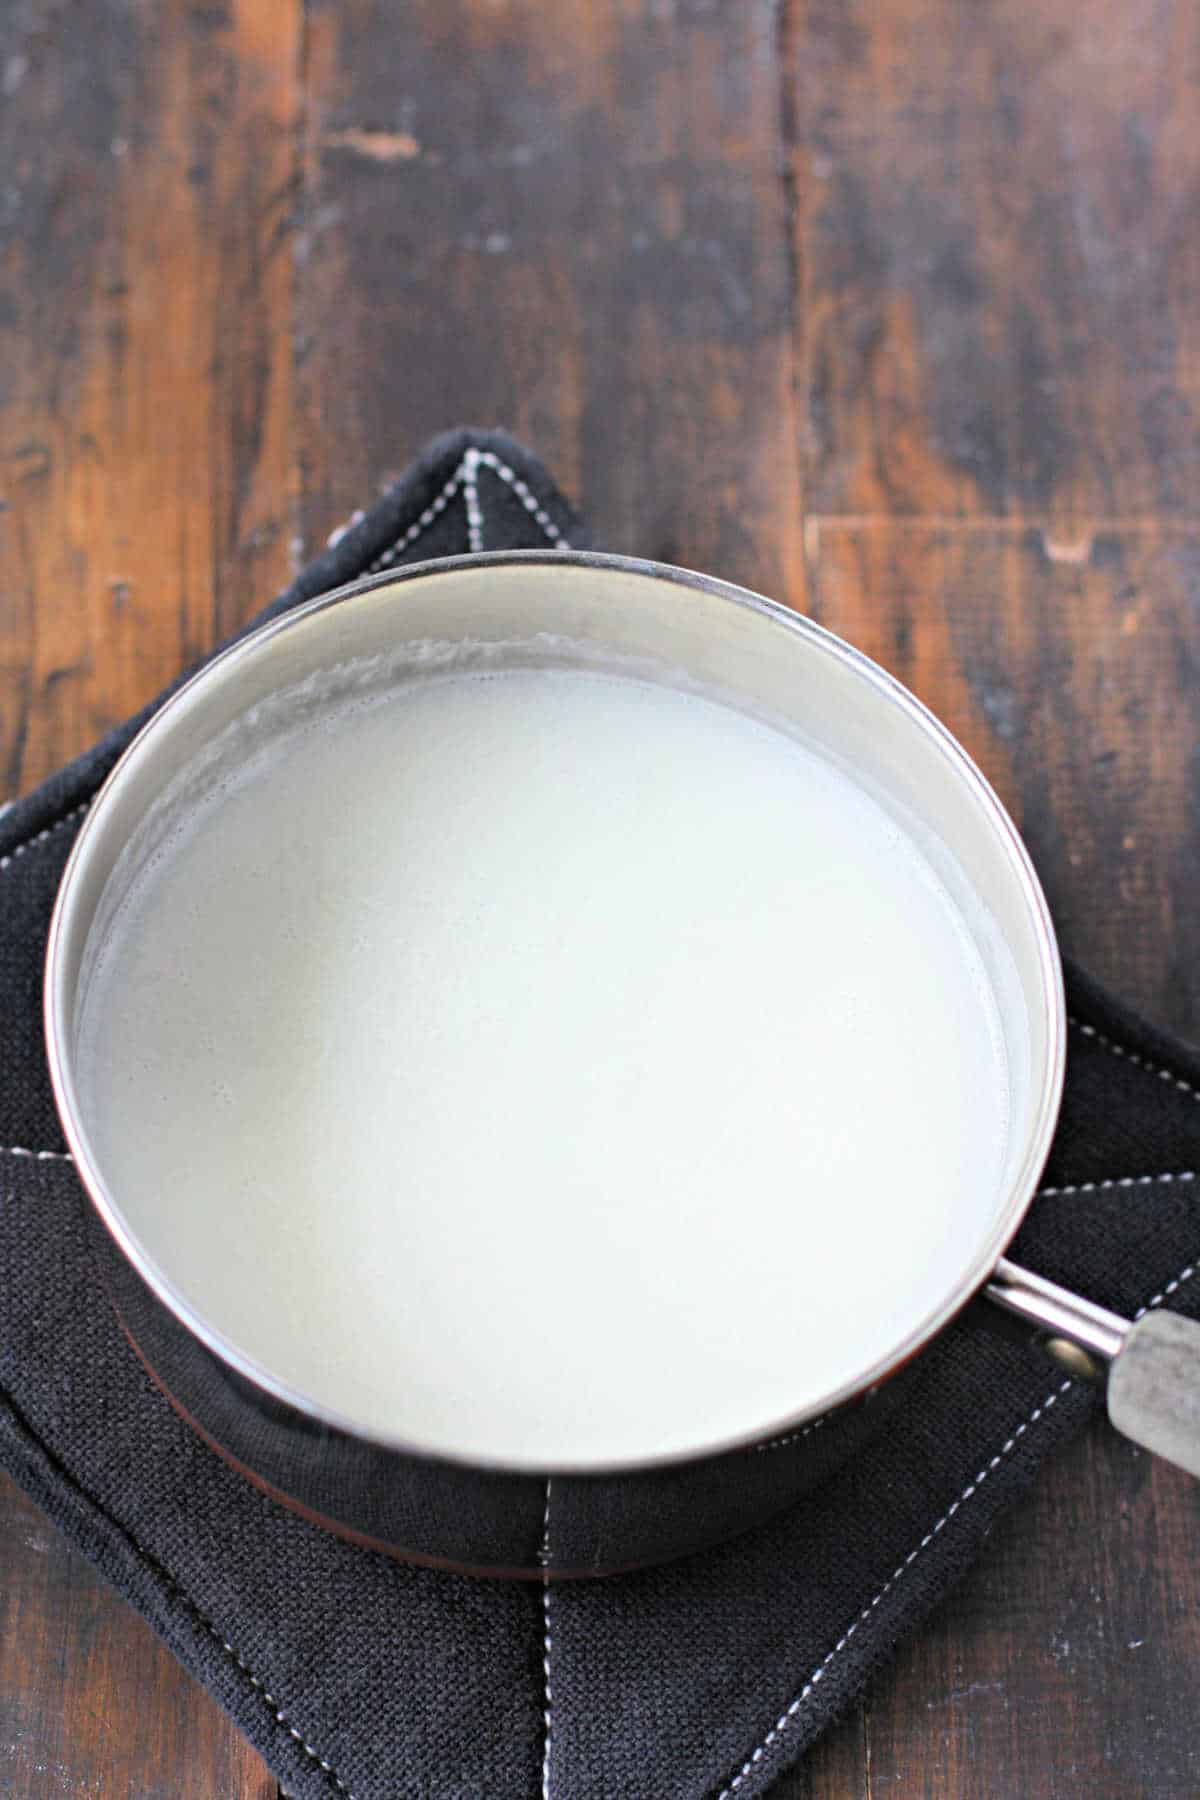 steamed dariy free milk in a pan